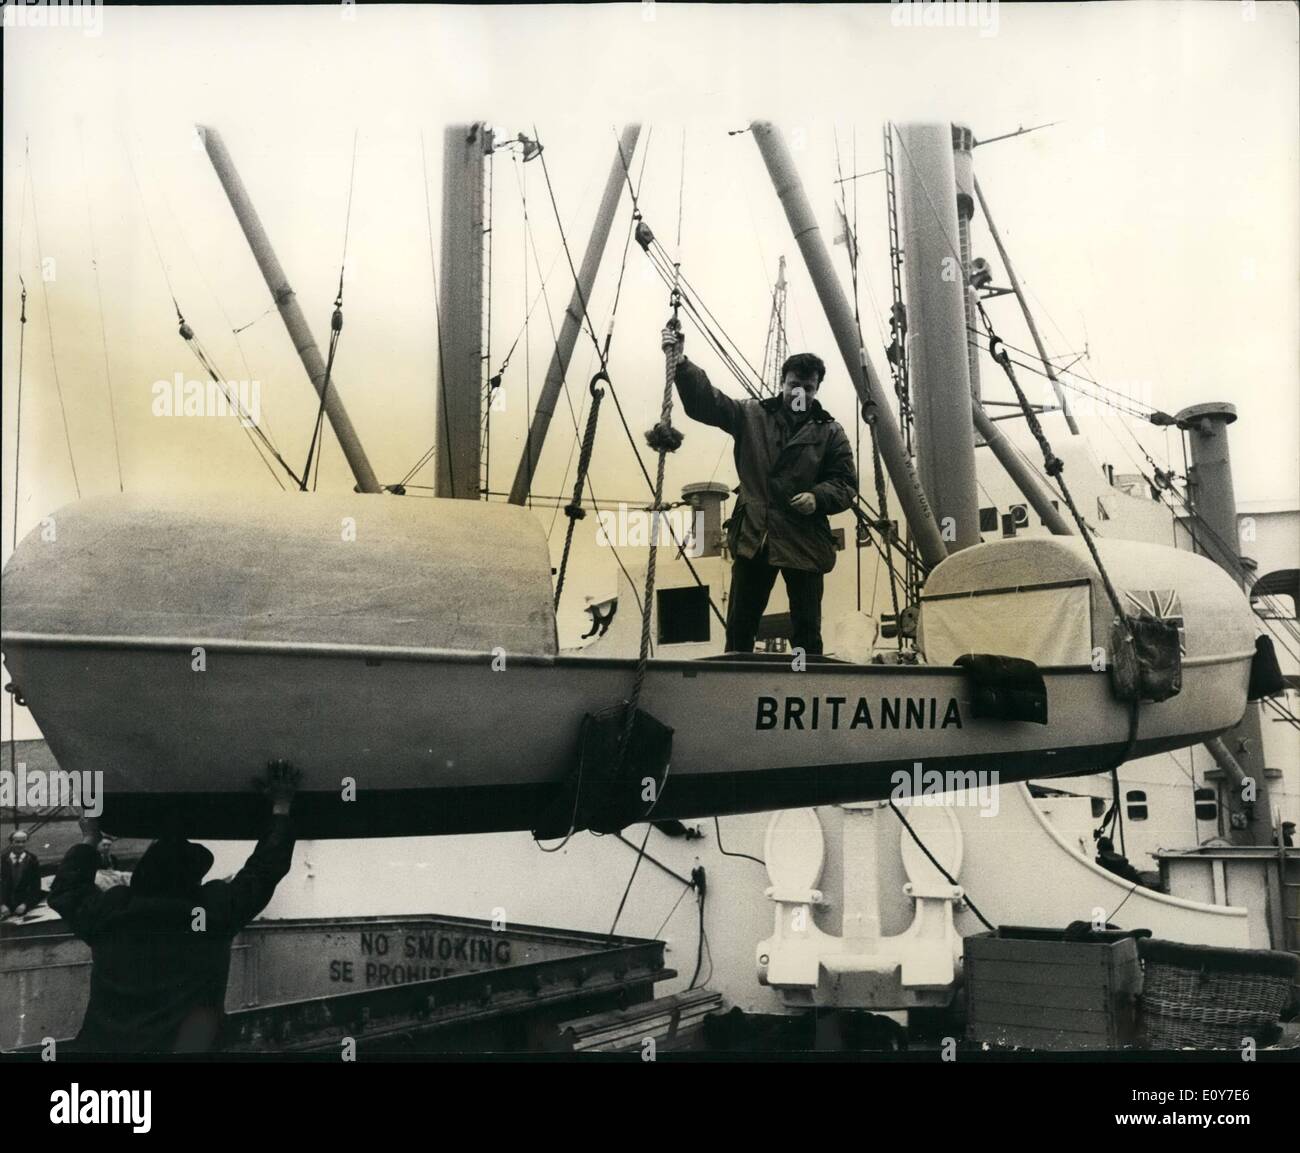 01 janvier 1969 - Single handed Rower Préparez-vous à la ligne de l'Atlantique 22 pieds de bateau en bois ''Britannia'' qui John Fairfax, va à la ligne en solitaire à travers l'Atlantique, a été chargées à bord de la Royal Mail Lines ''Aragon''. Le bateau, conçu par Uffa Fox, le célèbre constructeur de bateaux, pour démarrer il voyage à Las Palmas, dans les îles Canaries, d'où M. Fairfax commencera ses 3 500 km de ligne à Miami, en Floride. Il sera le premier à tenter d'affilée en solitaire à travers l'Atlantique. Il prévoit que le voyage prend environ trois mois. Photo montre :- M. Banque D'Images